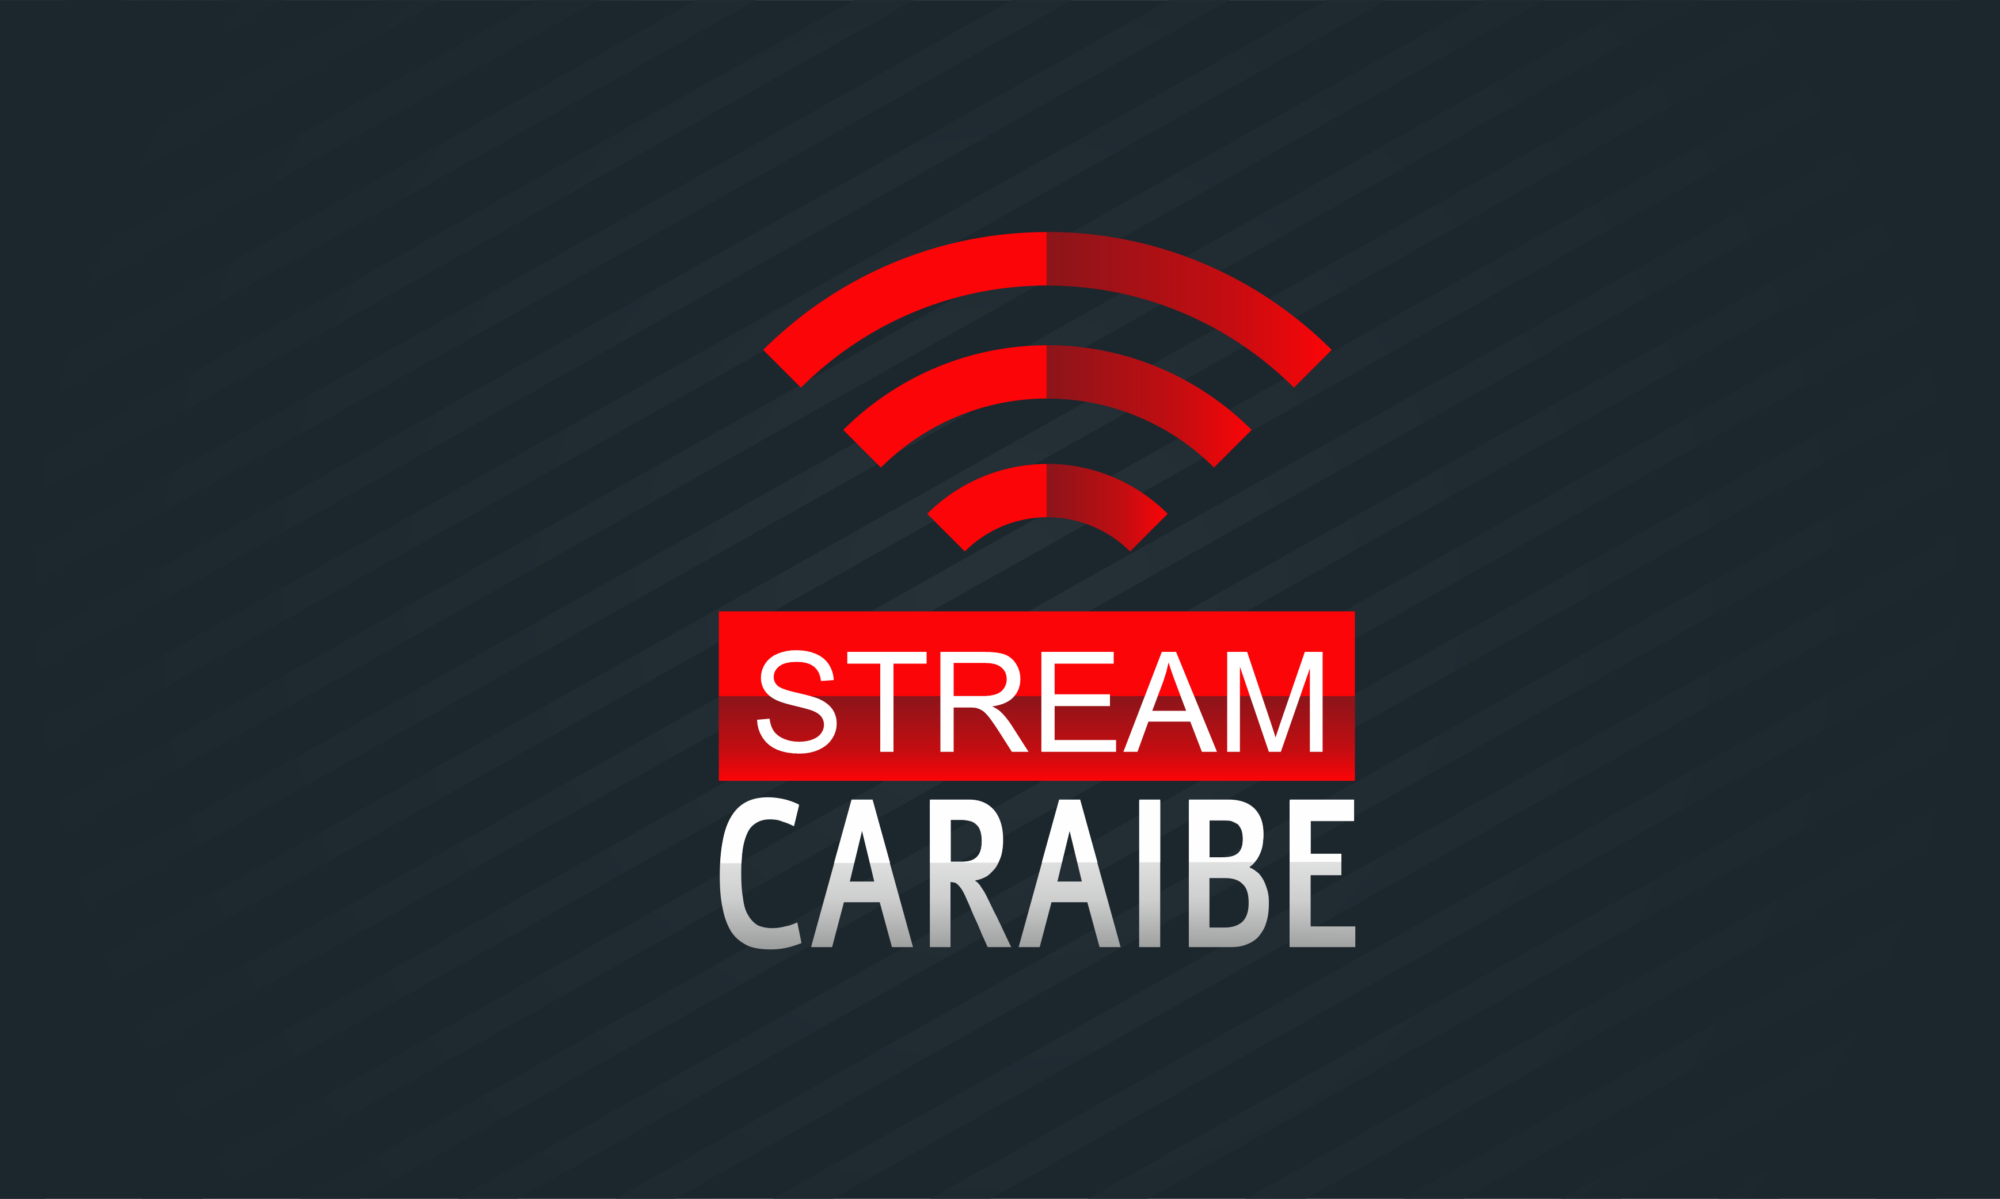 Stream Caraibe